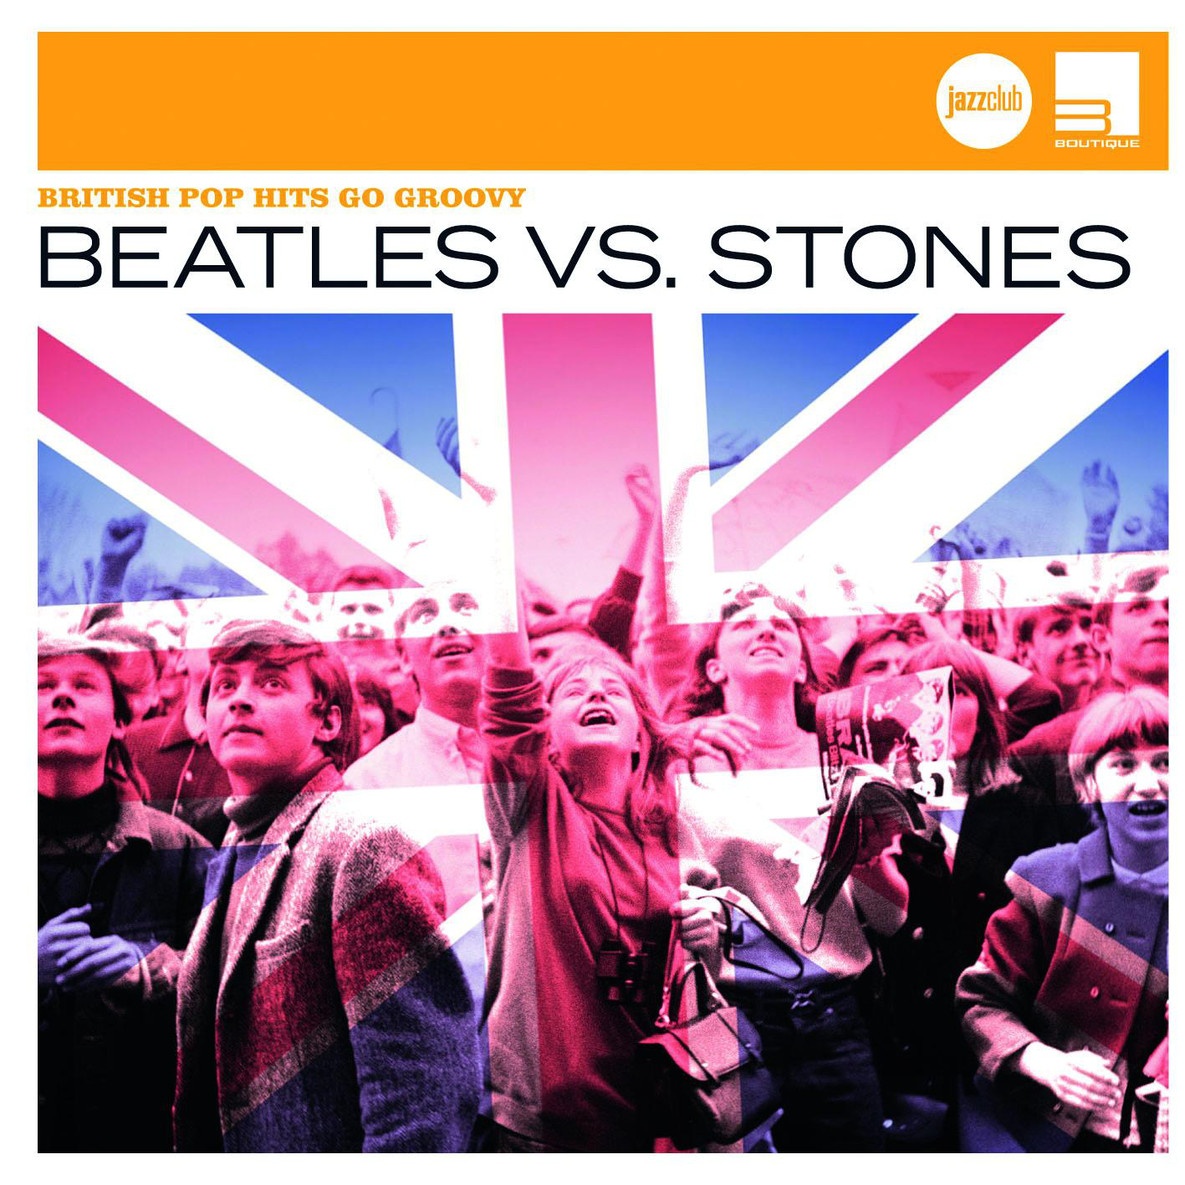 Beatles vs. Stones